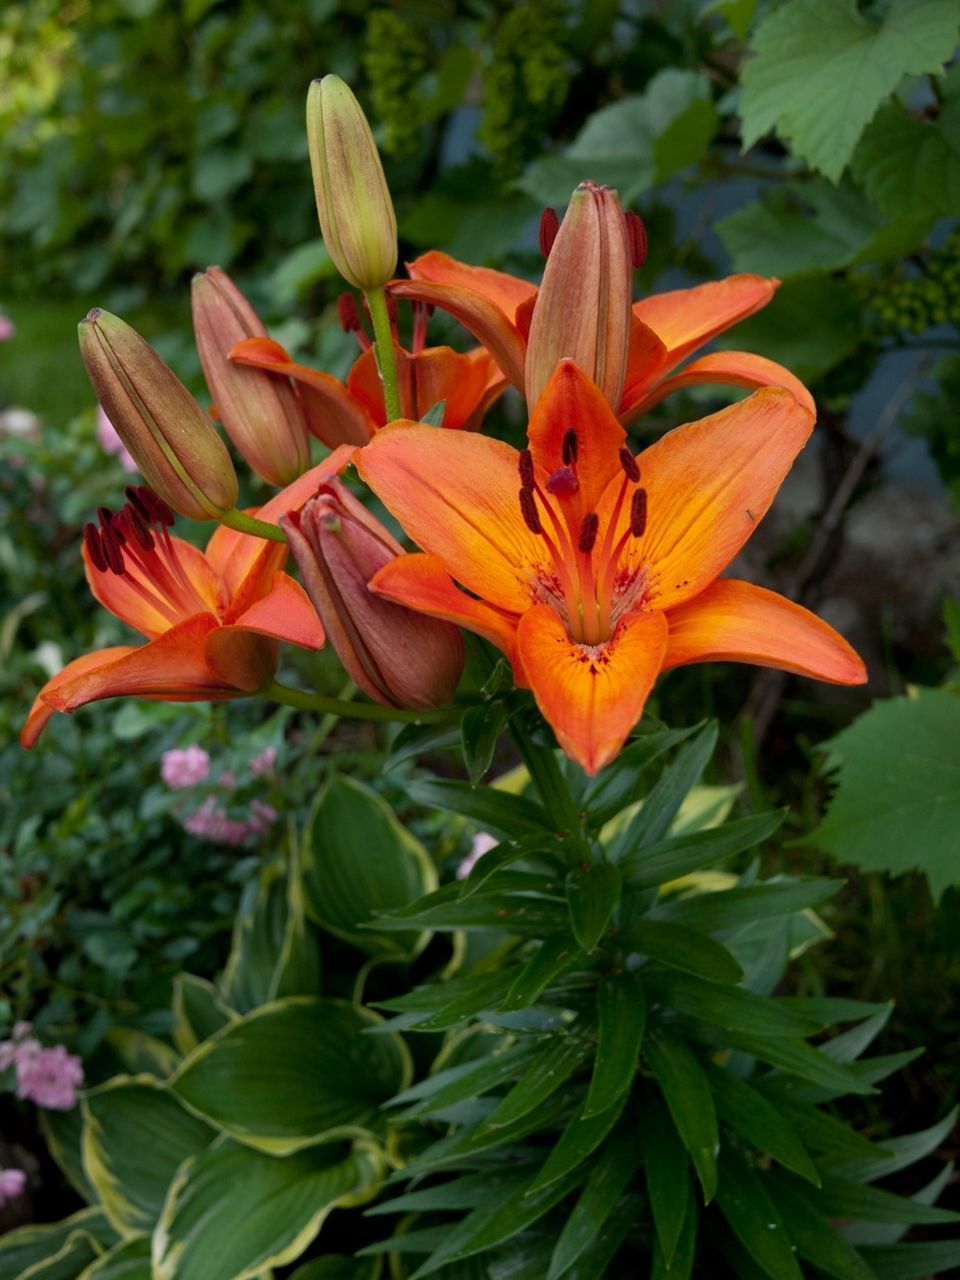 Orange lilies in bloom